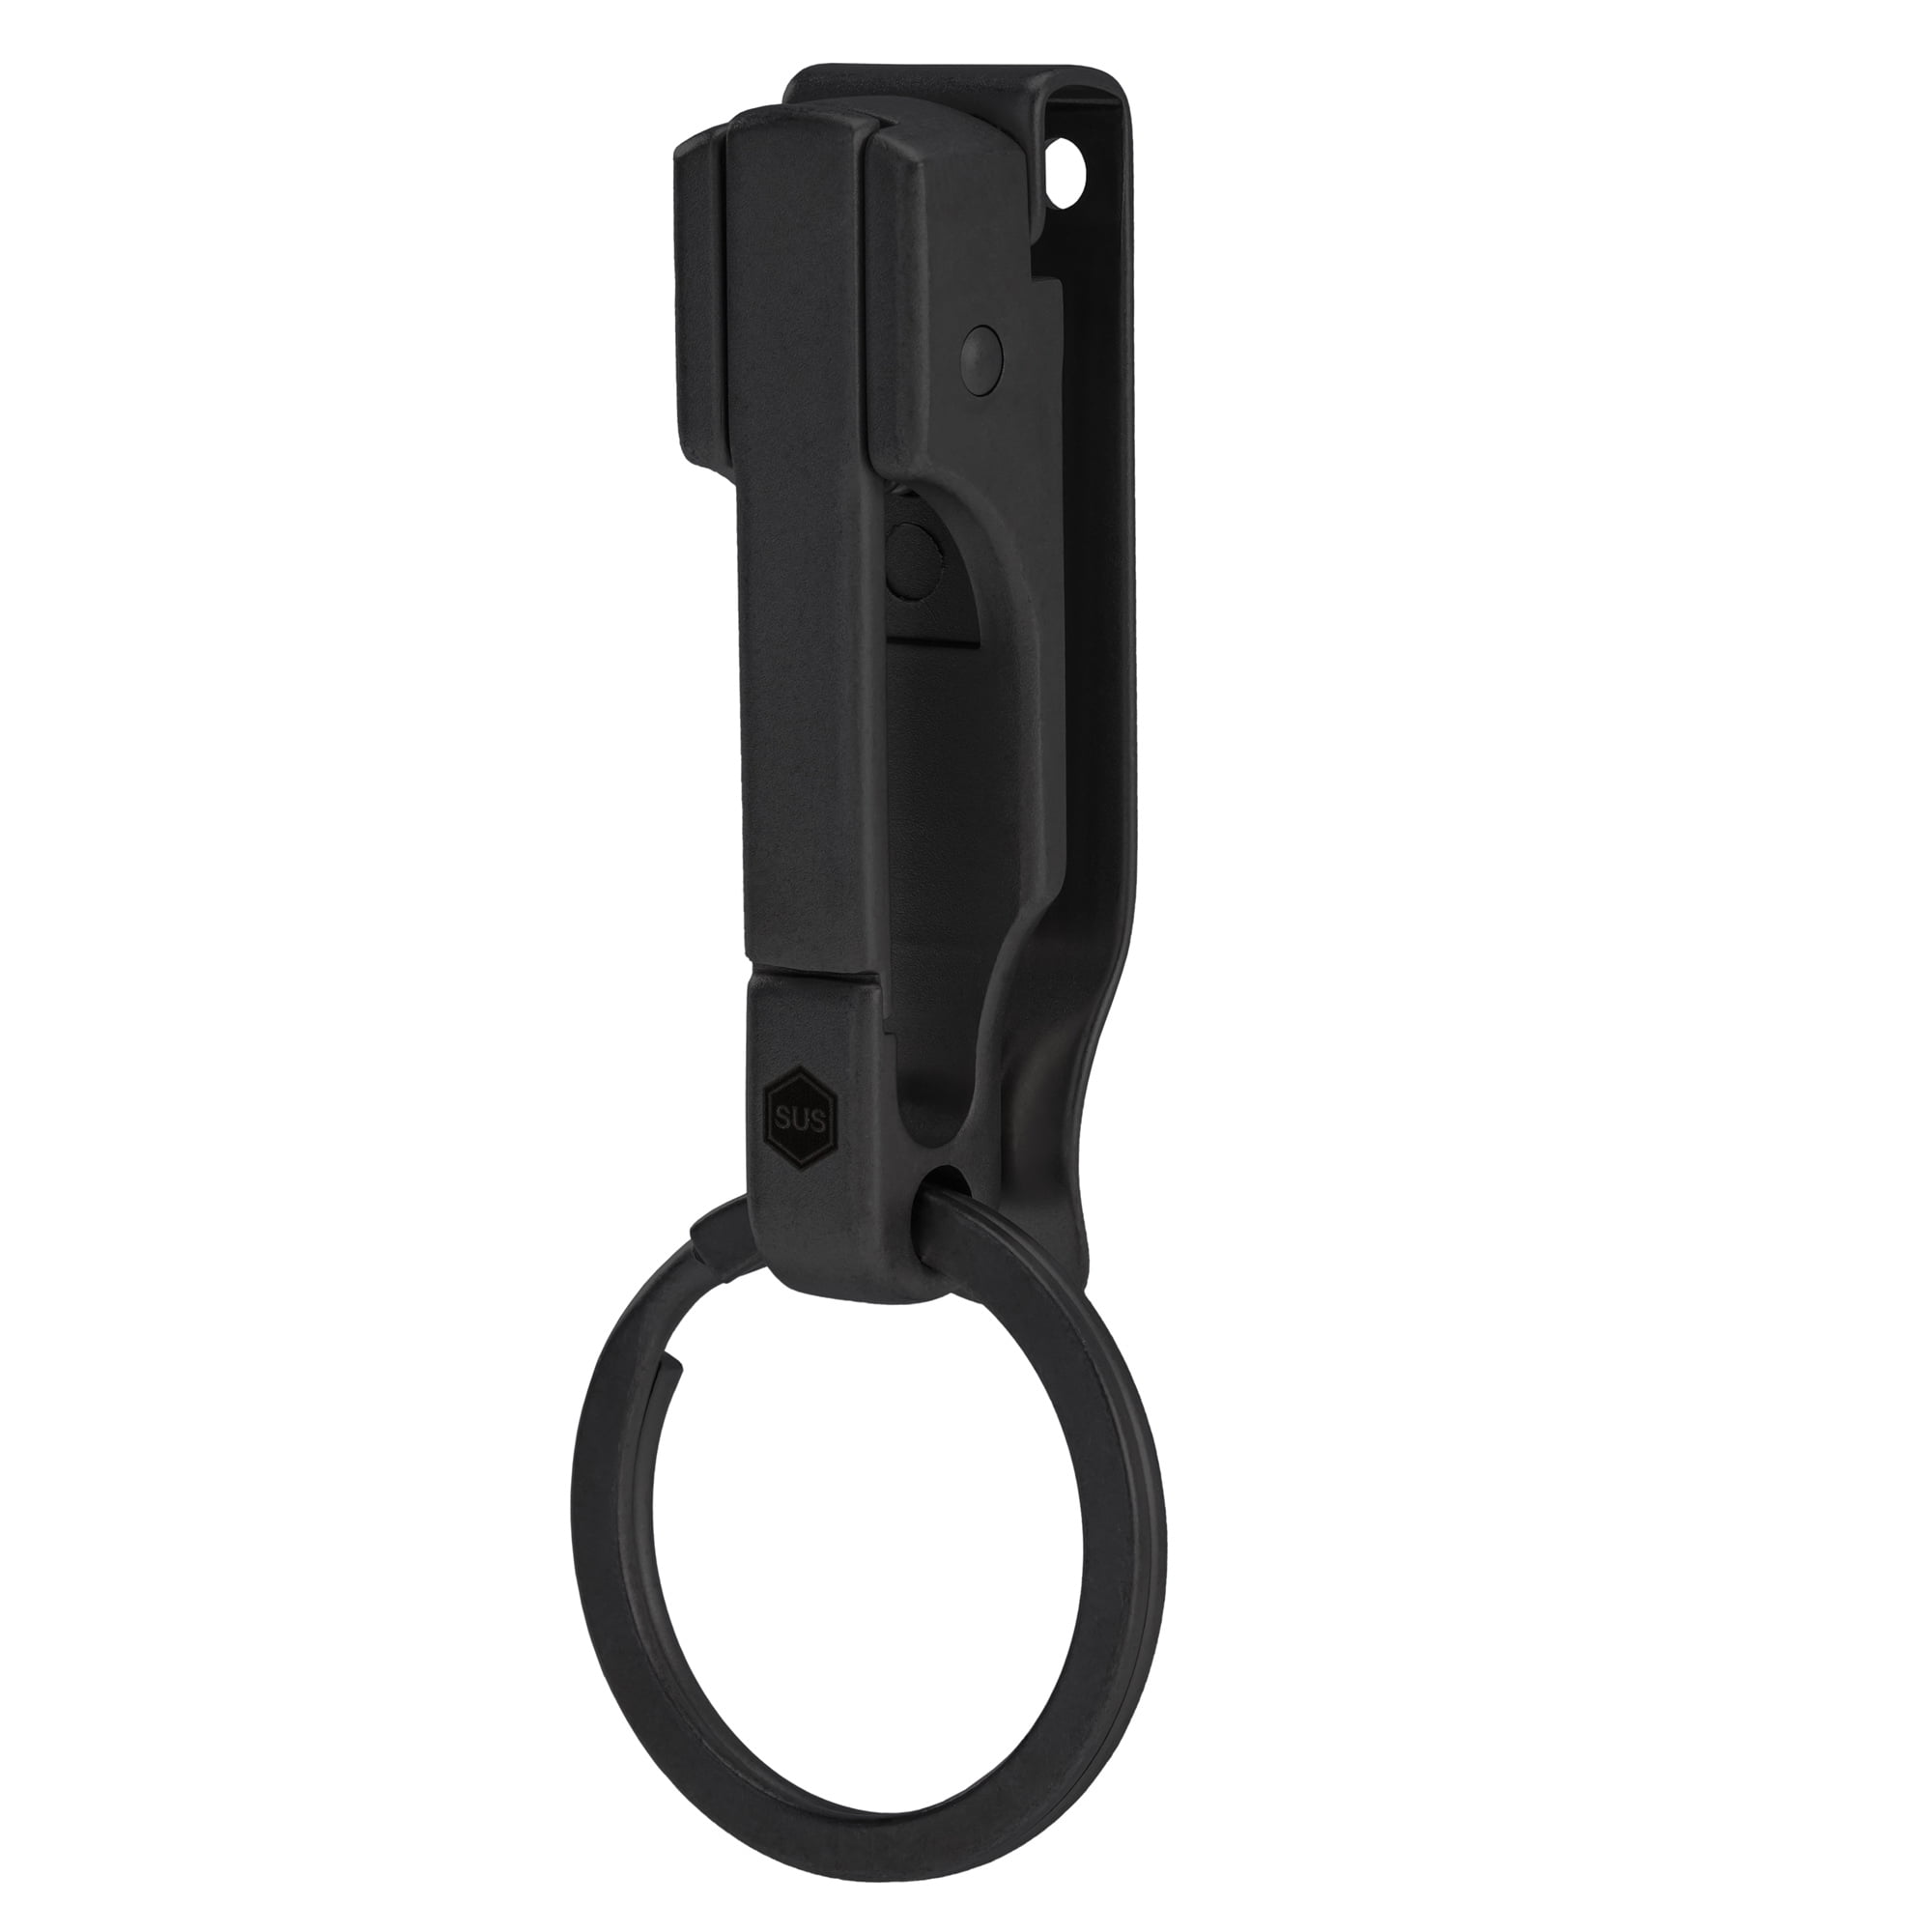 KeyUnity Titanium Keychain Pocket Clip, 2-in-1 EDC Key Ring Holder